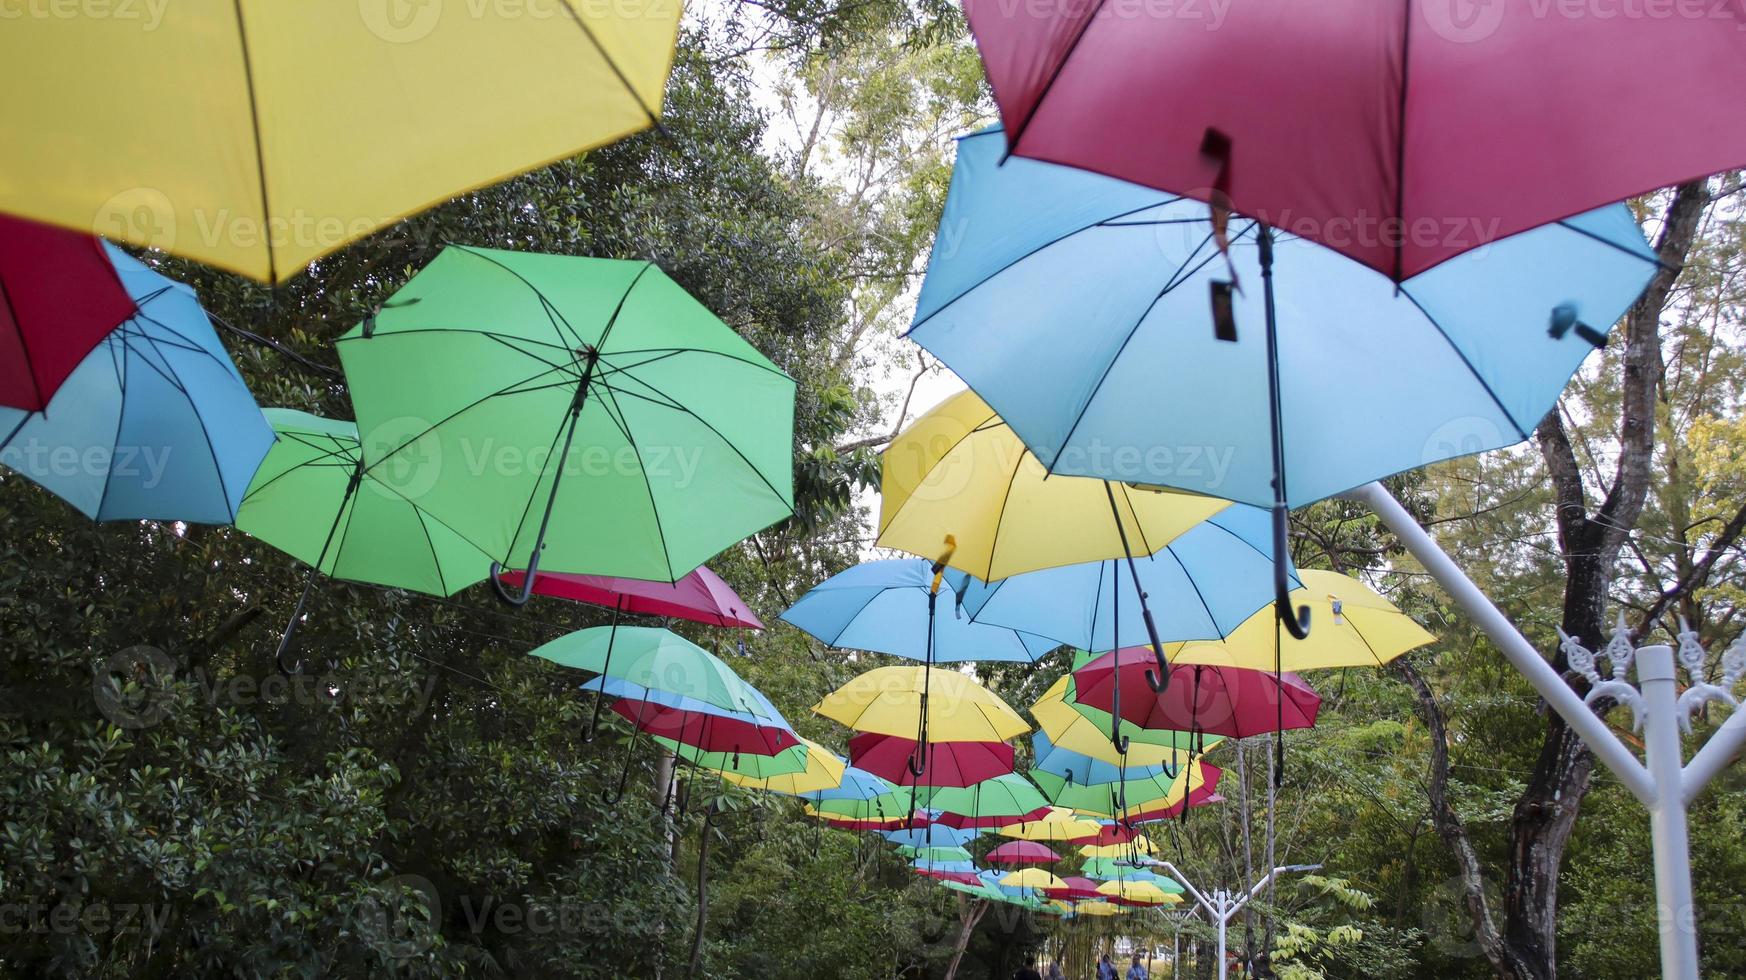 paraguas colgado en la decoración de la calle para atraer a la gente. atracción del parque al aire libre para una sesión de fotos o una bonita vista de fondo.